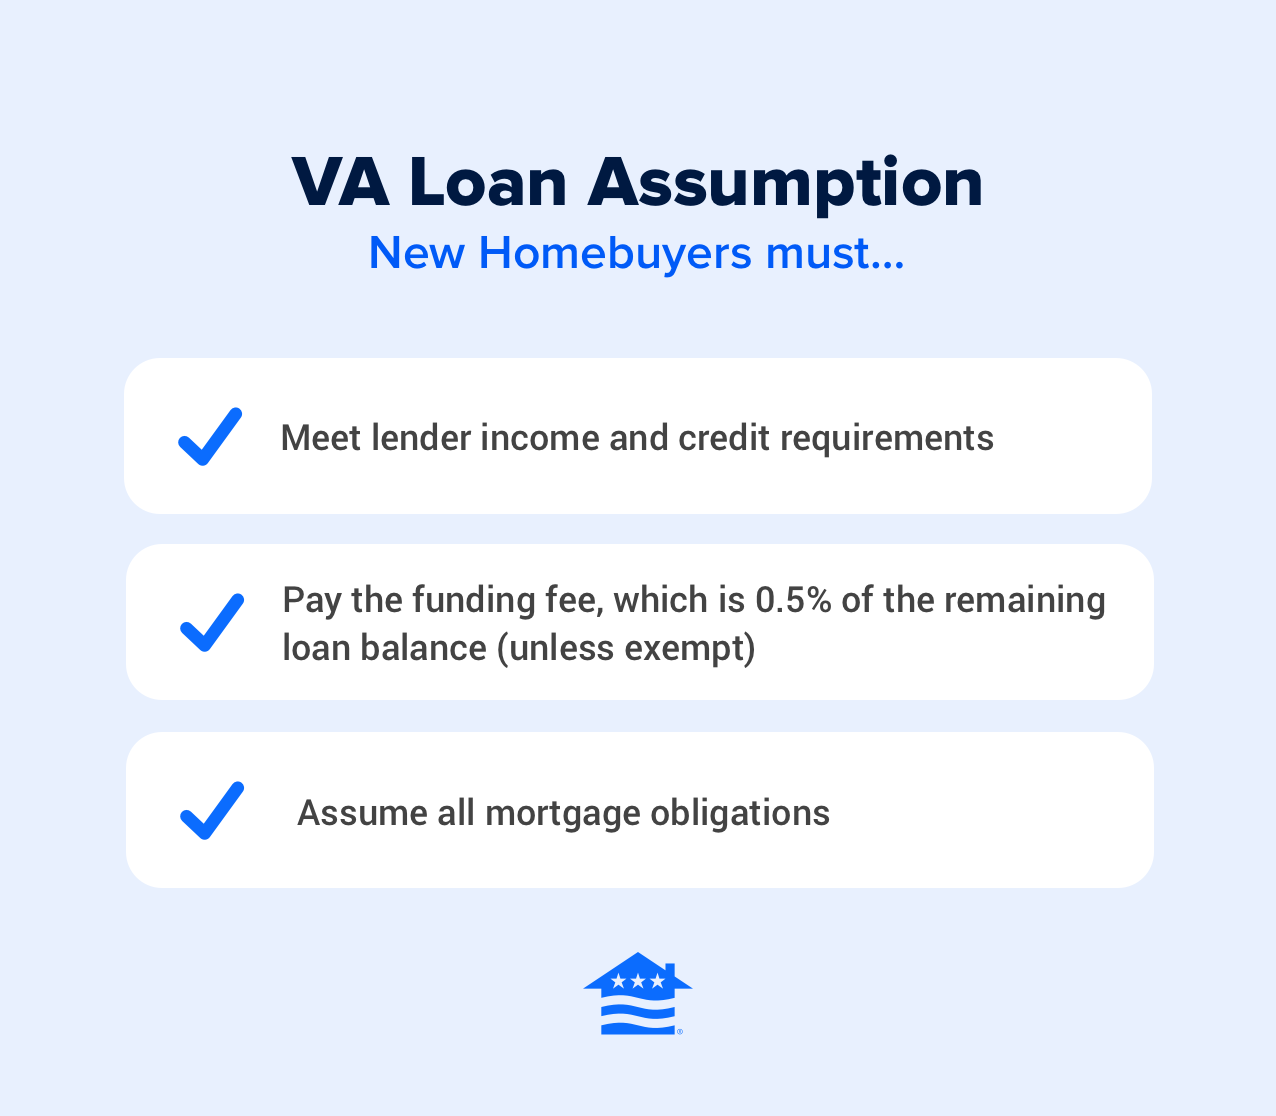 VA loan assumption requirements 